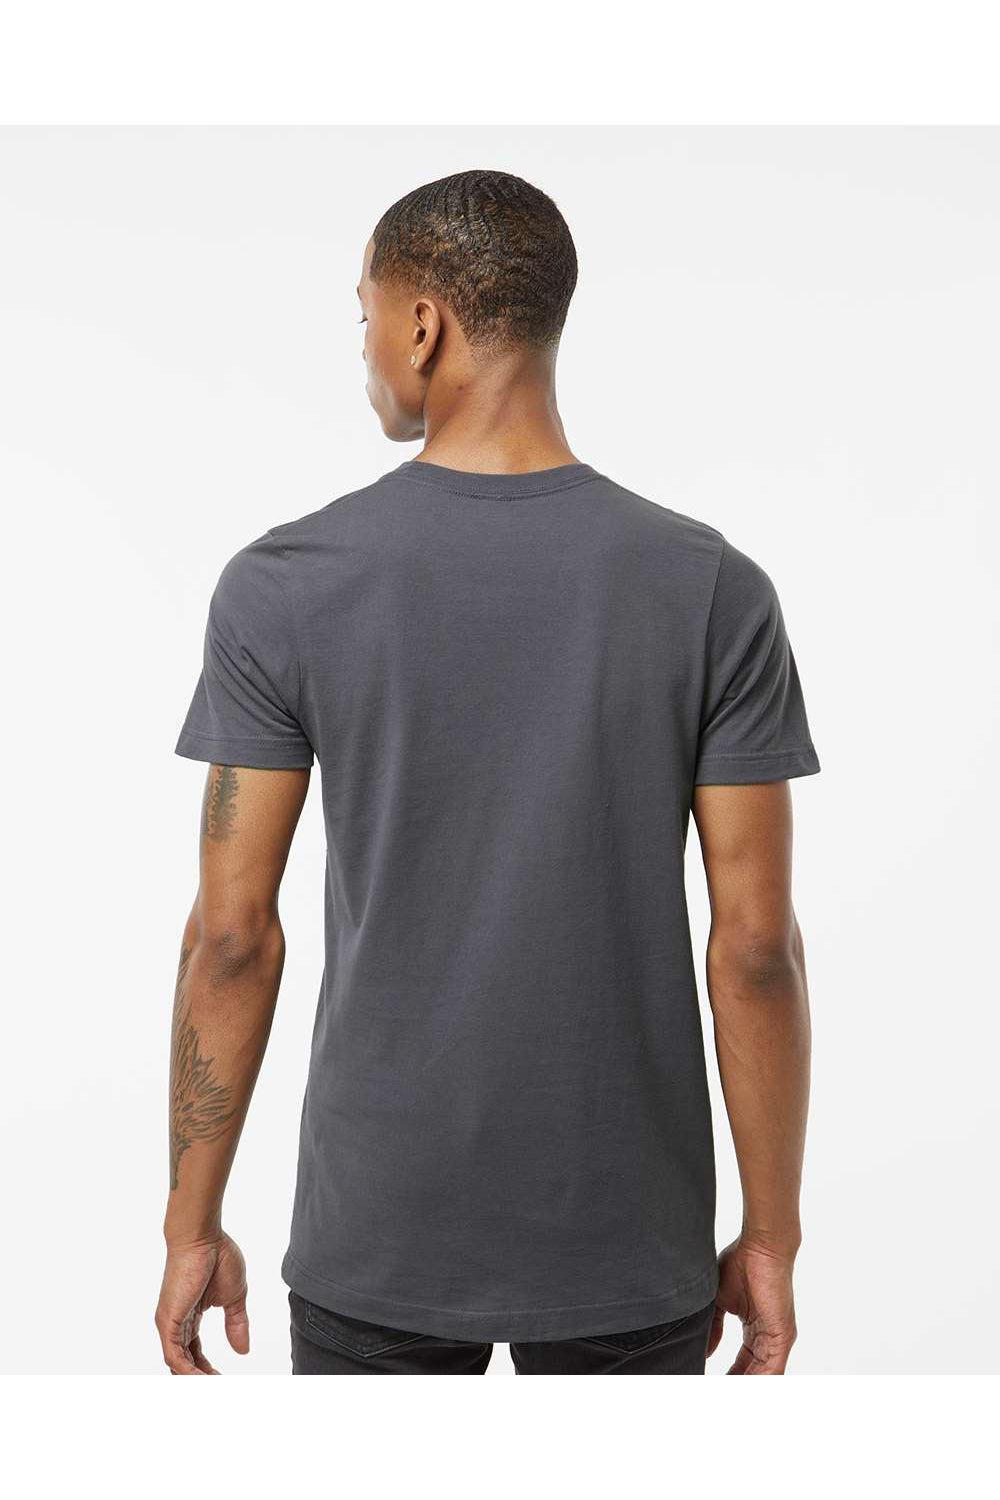 Tultex 502 Mens Premium Short Sleeve Crewneck T-Shirt Charcoal Grey Model Back